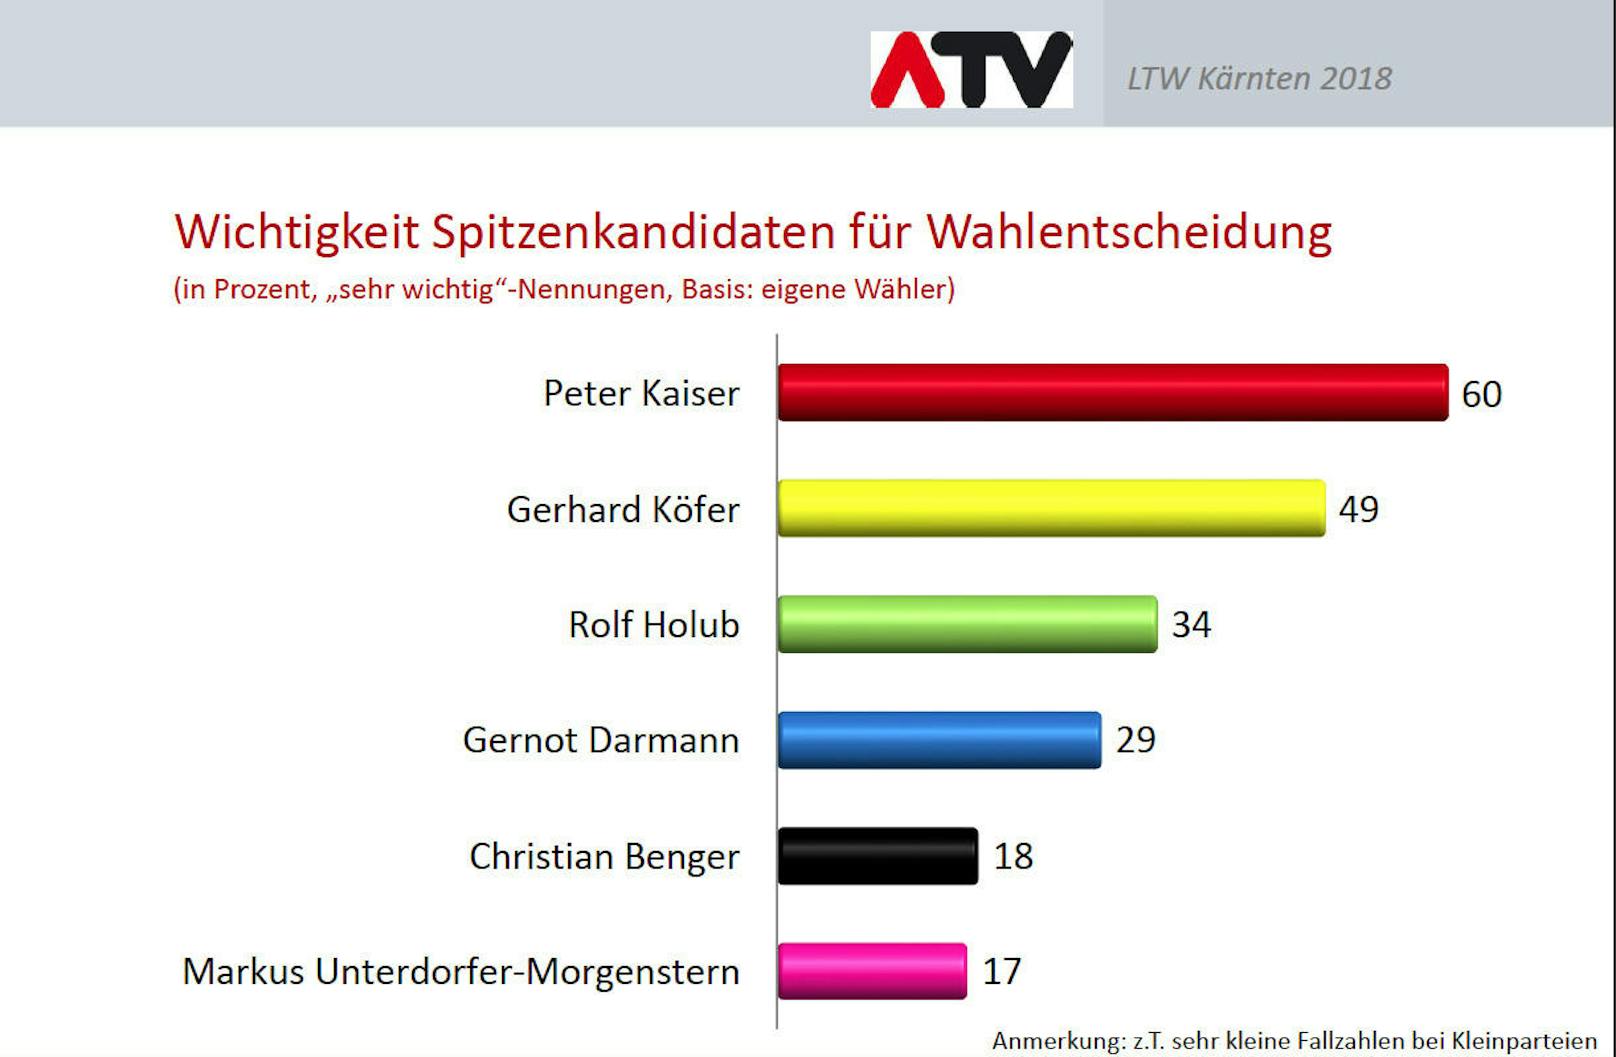 VP-Spitzenkandidat Benger und Neos-Frontmann Unterdorfer-Morgenstern konnten auch bei den eigenen Wählern nicht wirklich punkten.